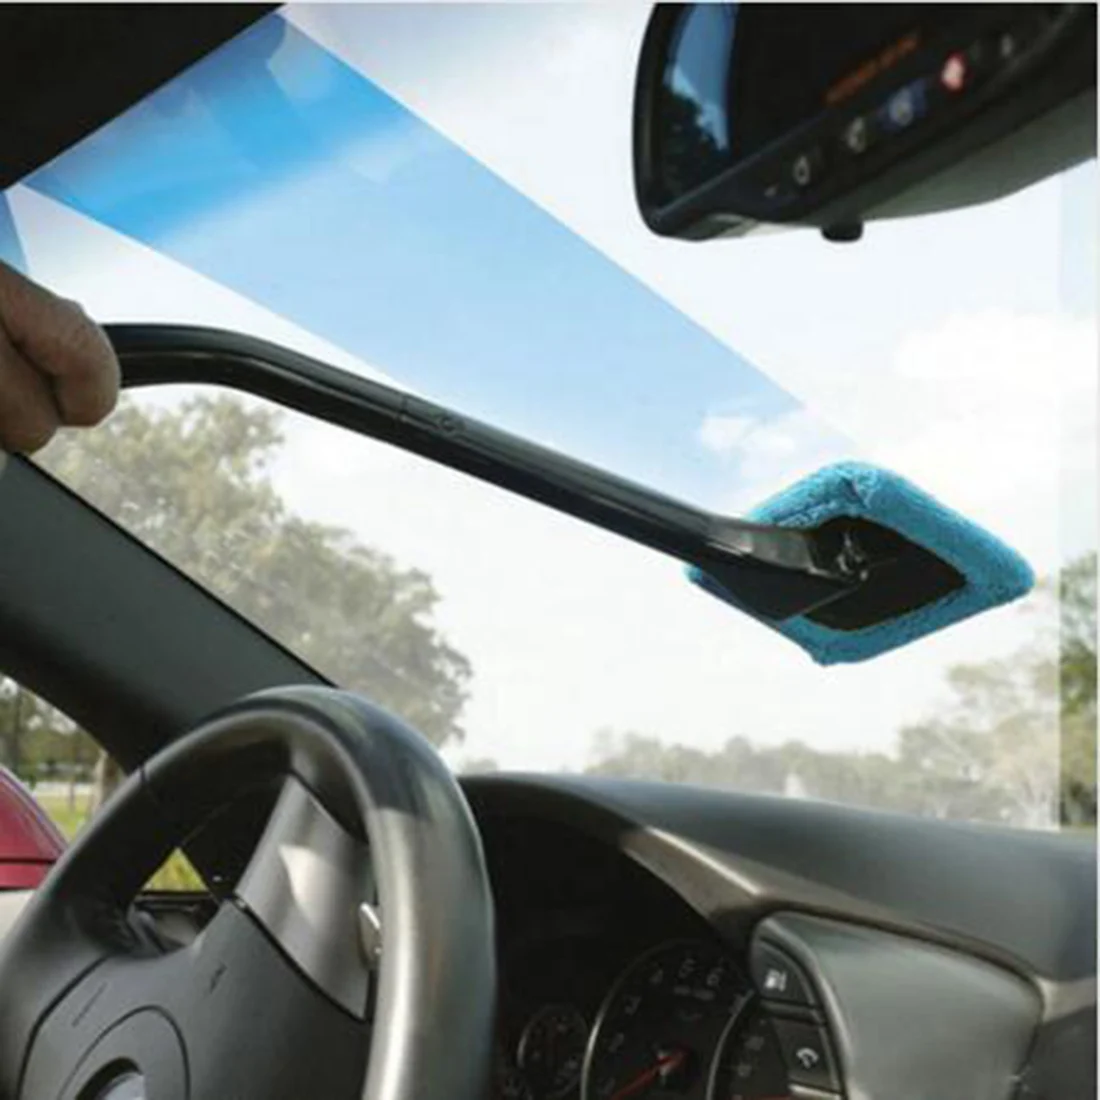 Бу-бауты 1 шт. из микрофибры Авто Window Cleaner Длинные ручки автомобиля моющийся кисть окна автомобиля стеклоочиститель Очиститель ткань чистые